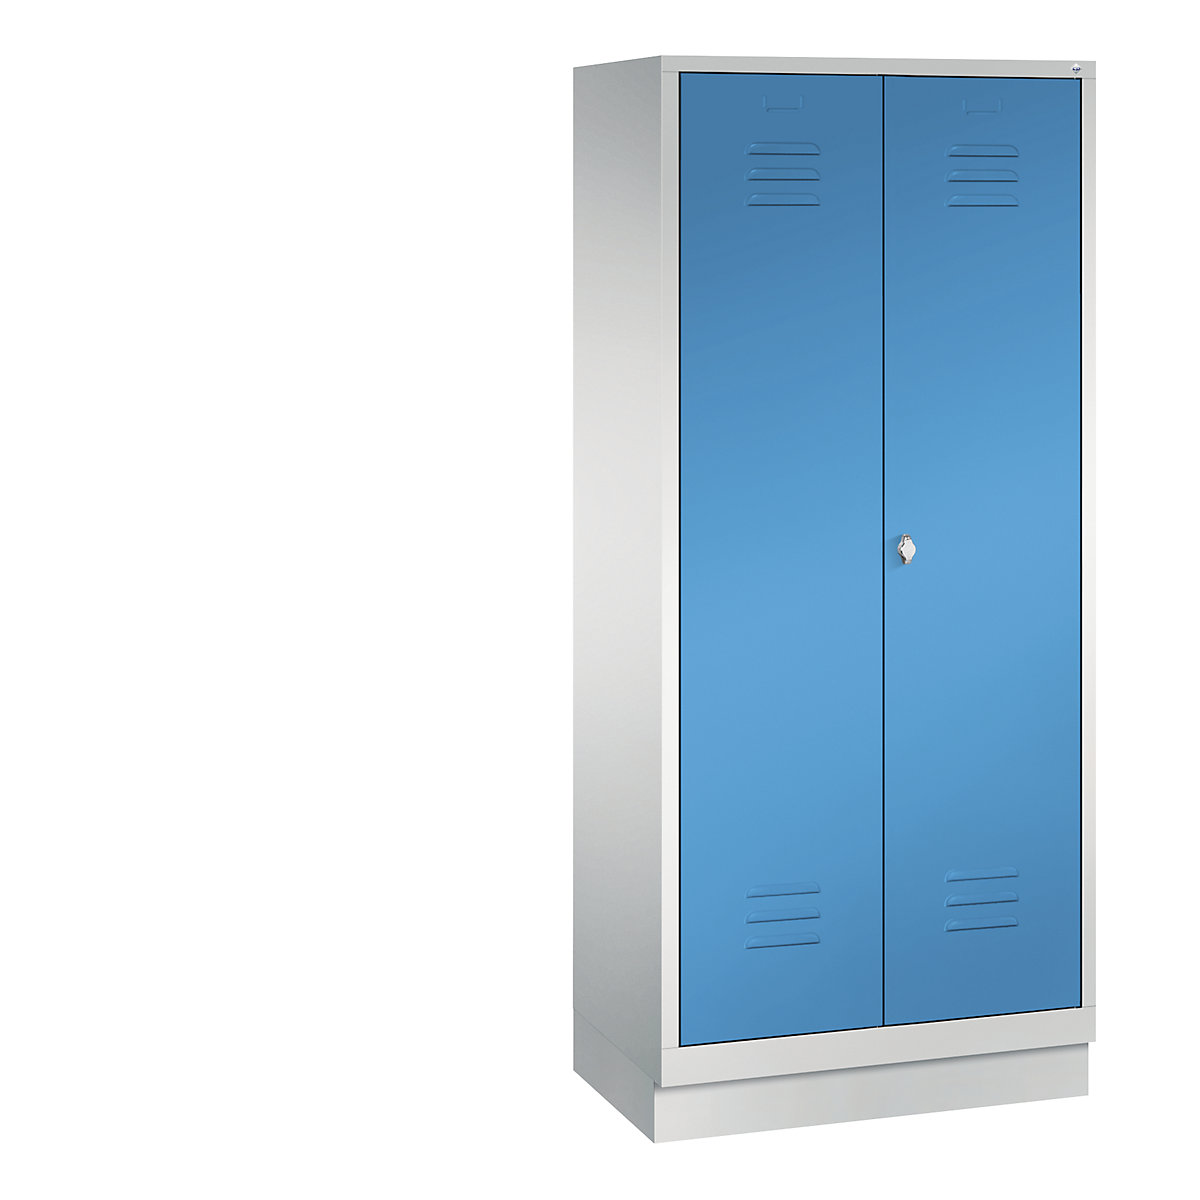 CLASSIC omara za pripomočke s podnožjem – C+P, 2 predelka, širina 400 mm/predelek, svetlo sive / svetlo modre barve-9